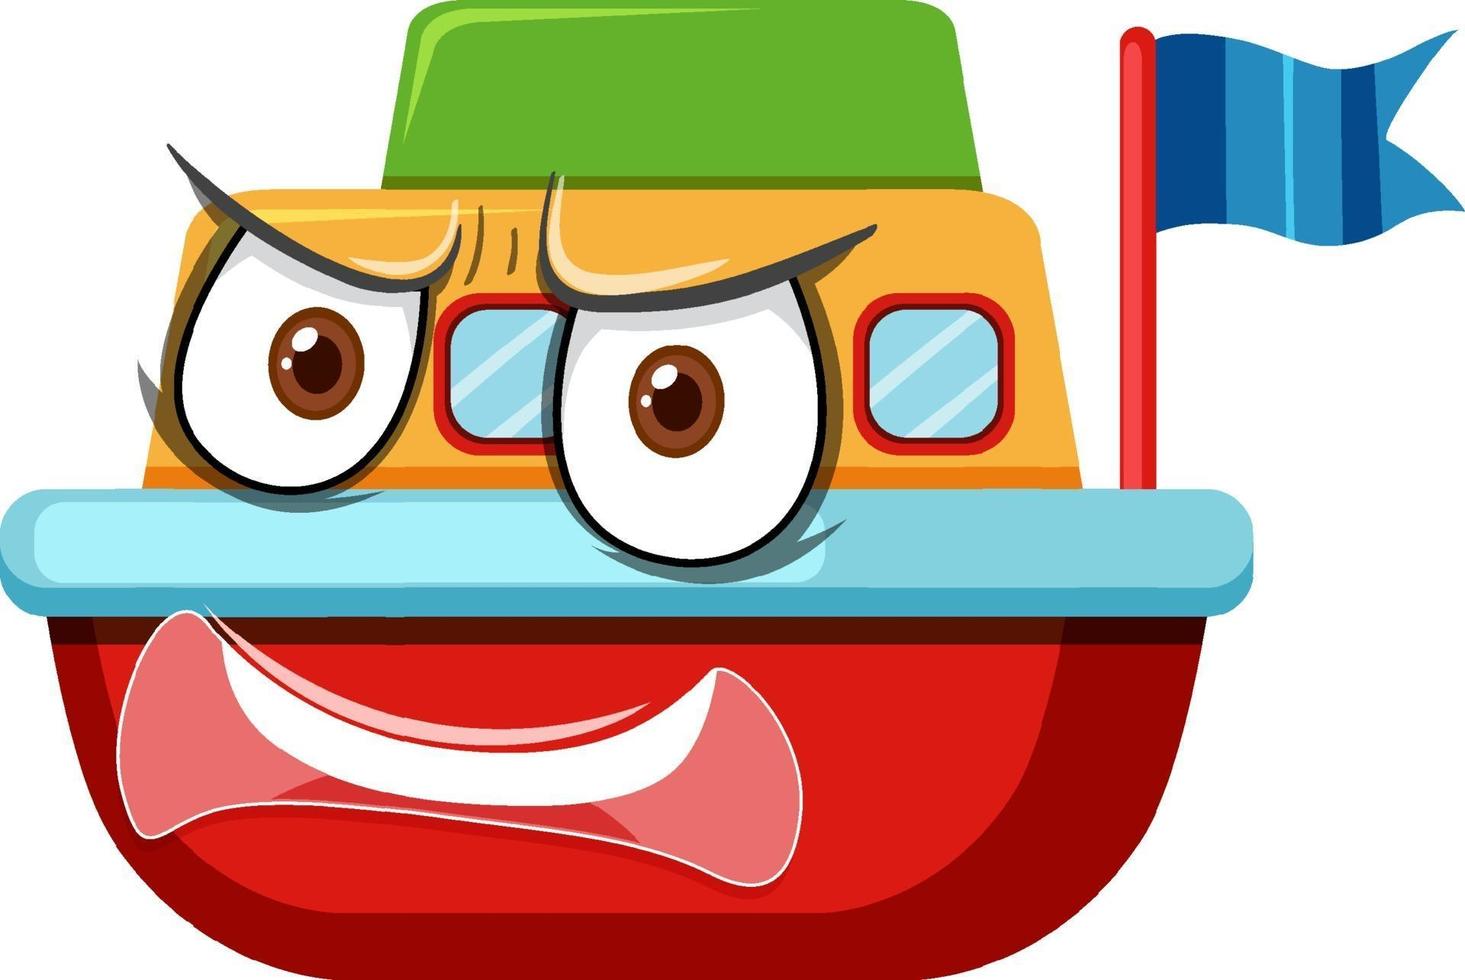 Boot Spielzeug Zeichentrickfigur mit Gesichtsausdruck vektor